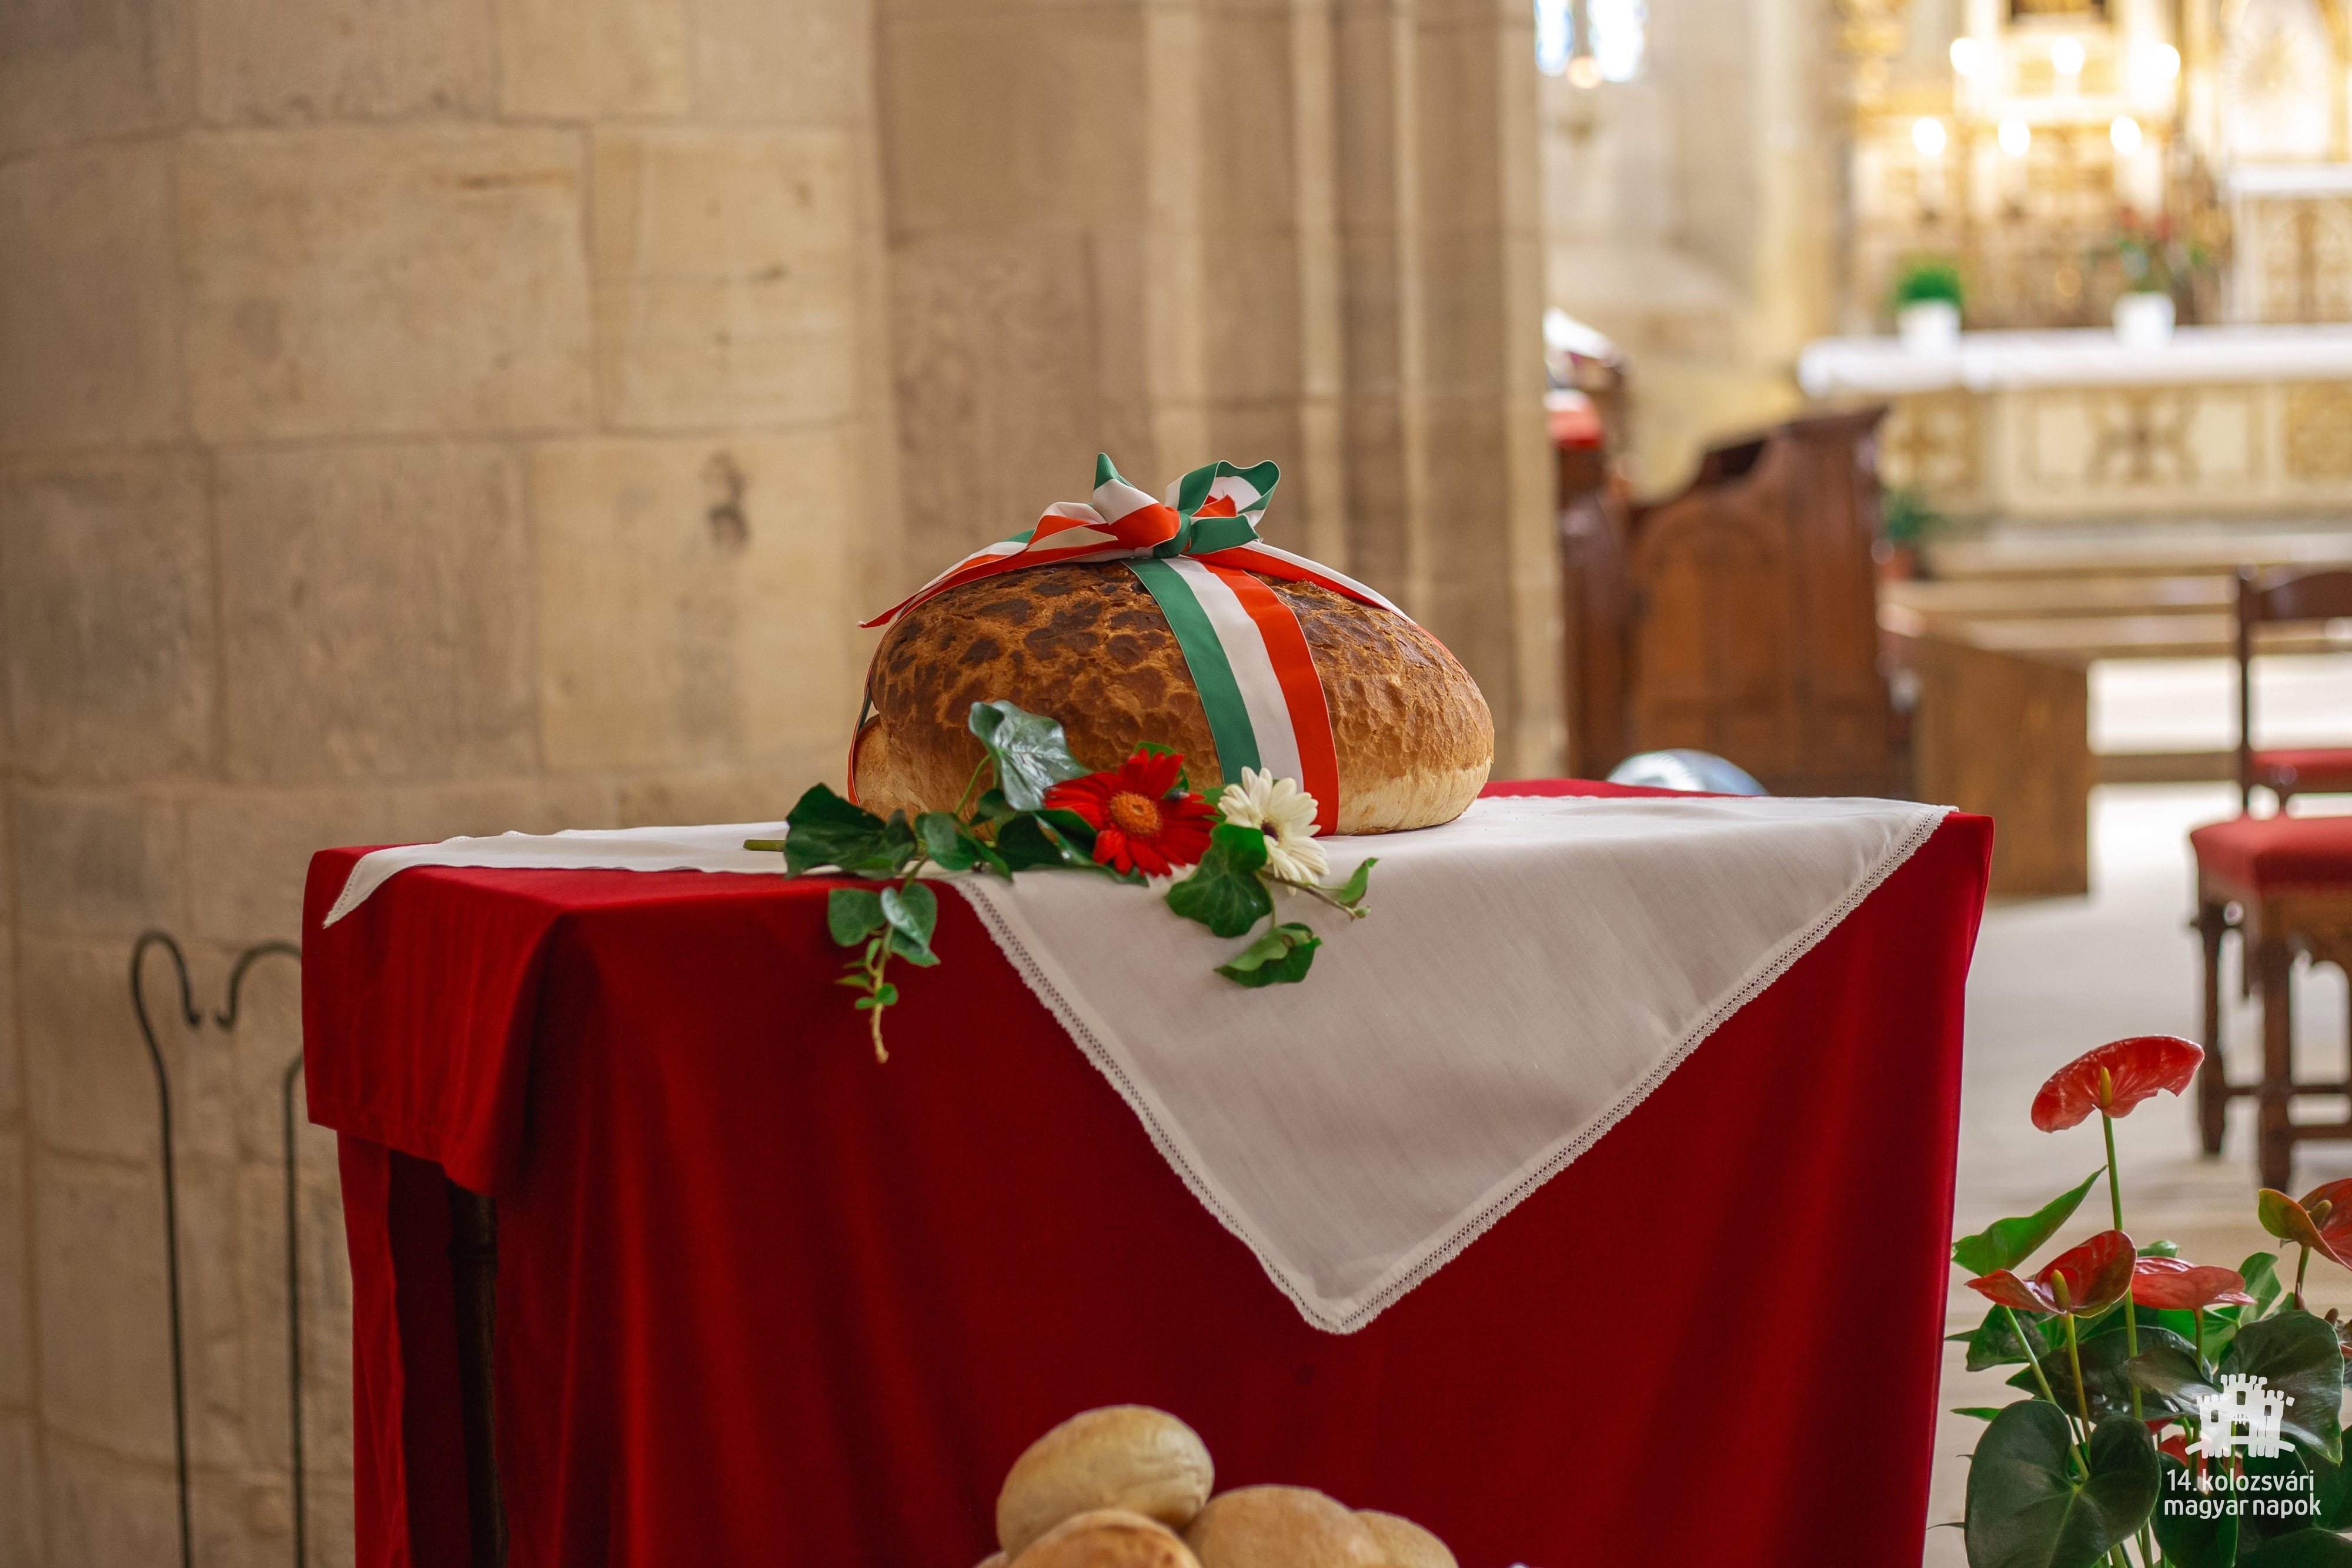 Szent István-napi ünnepi szentmise és kenyérszentelés a Szent Mihály-templomban